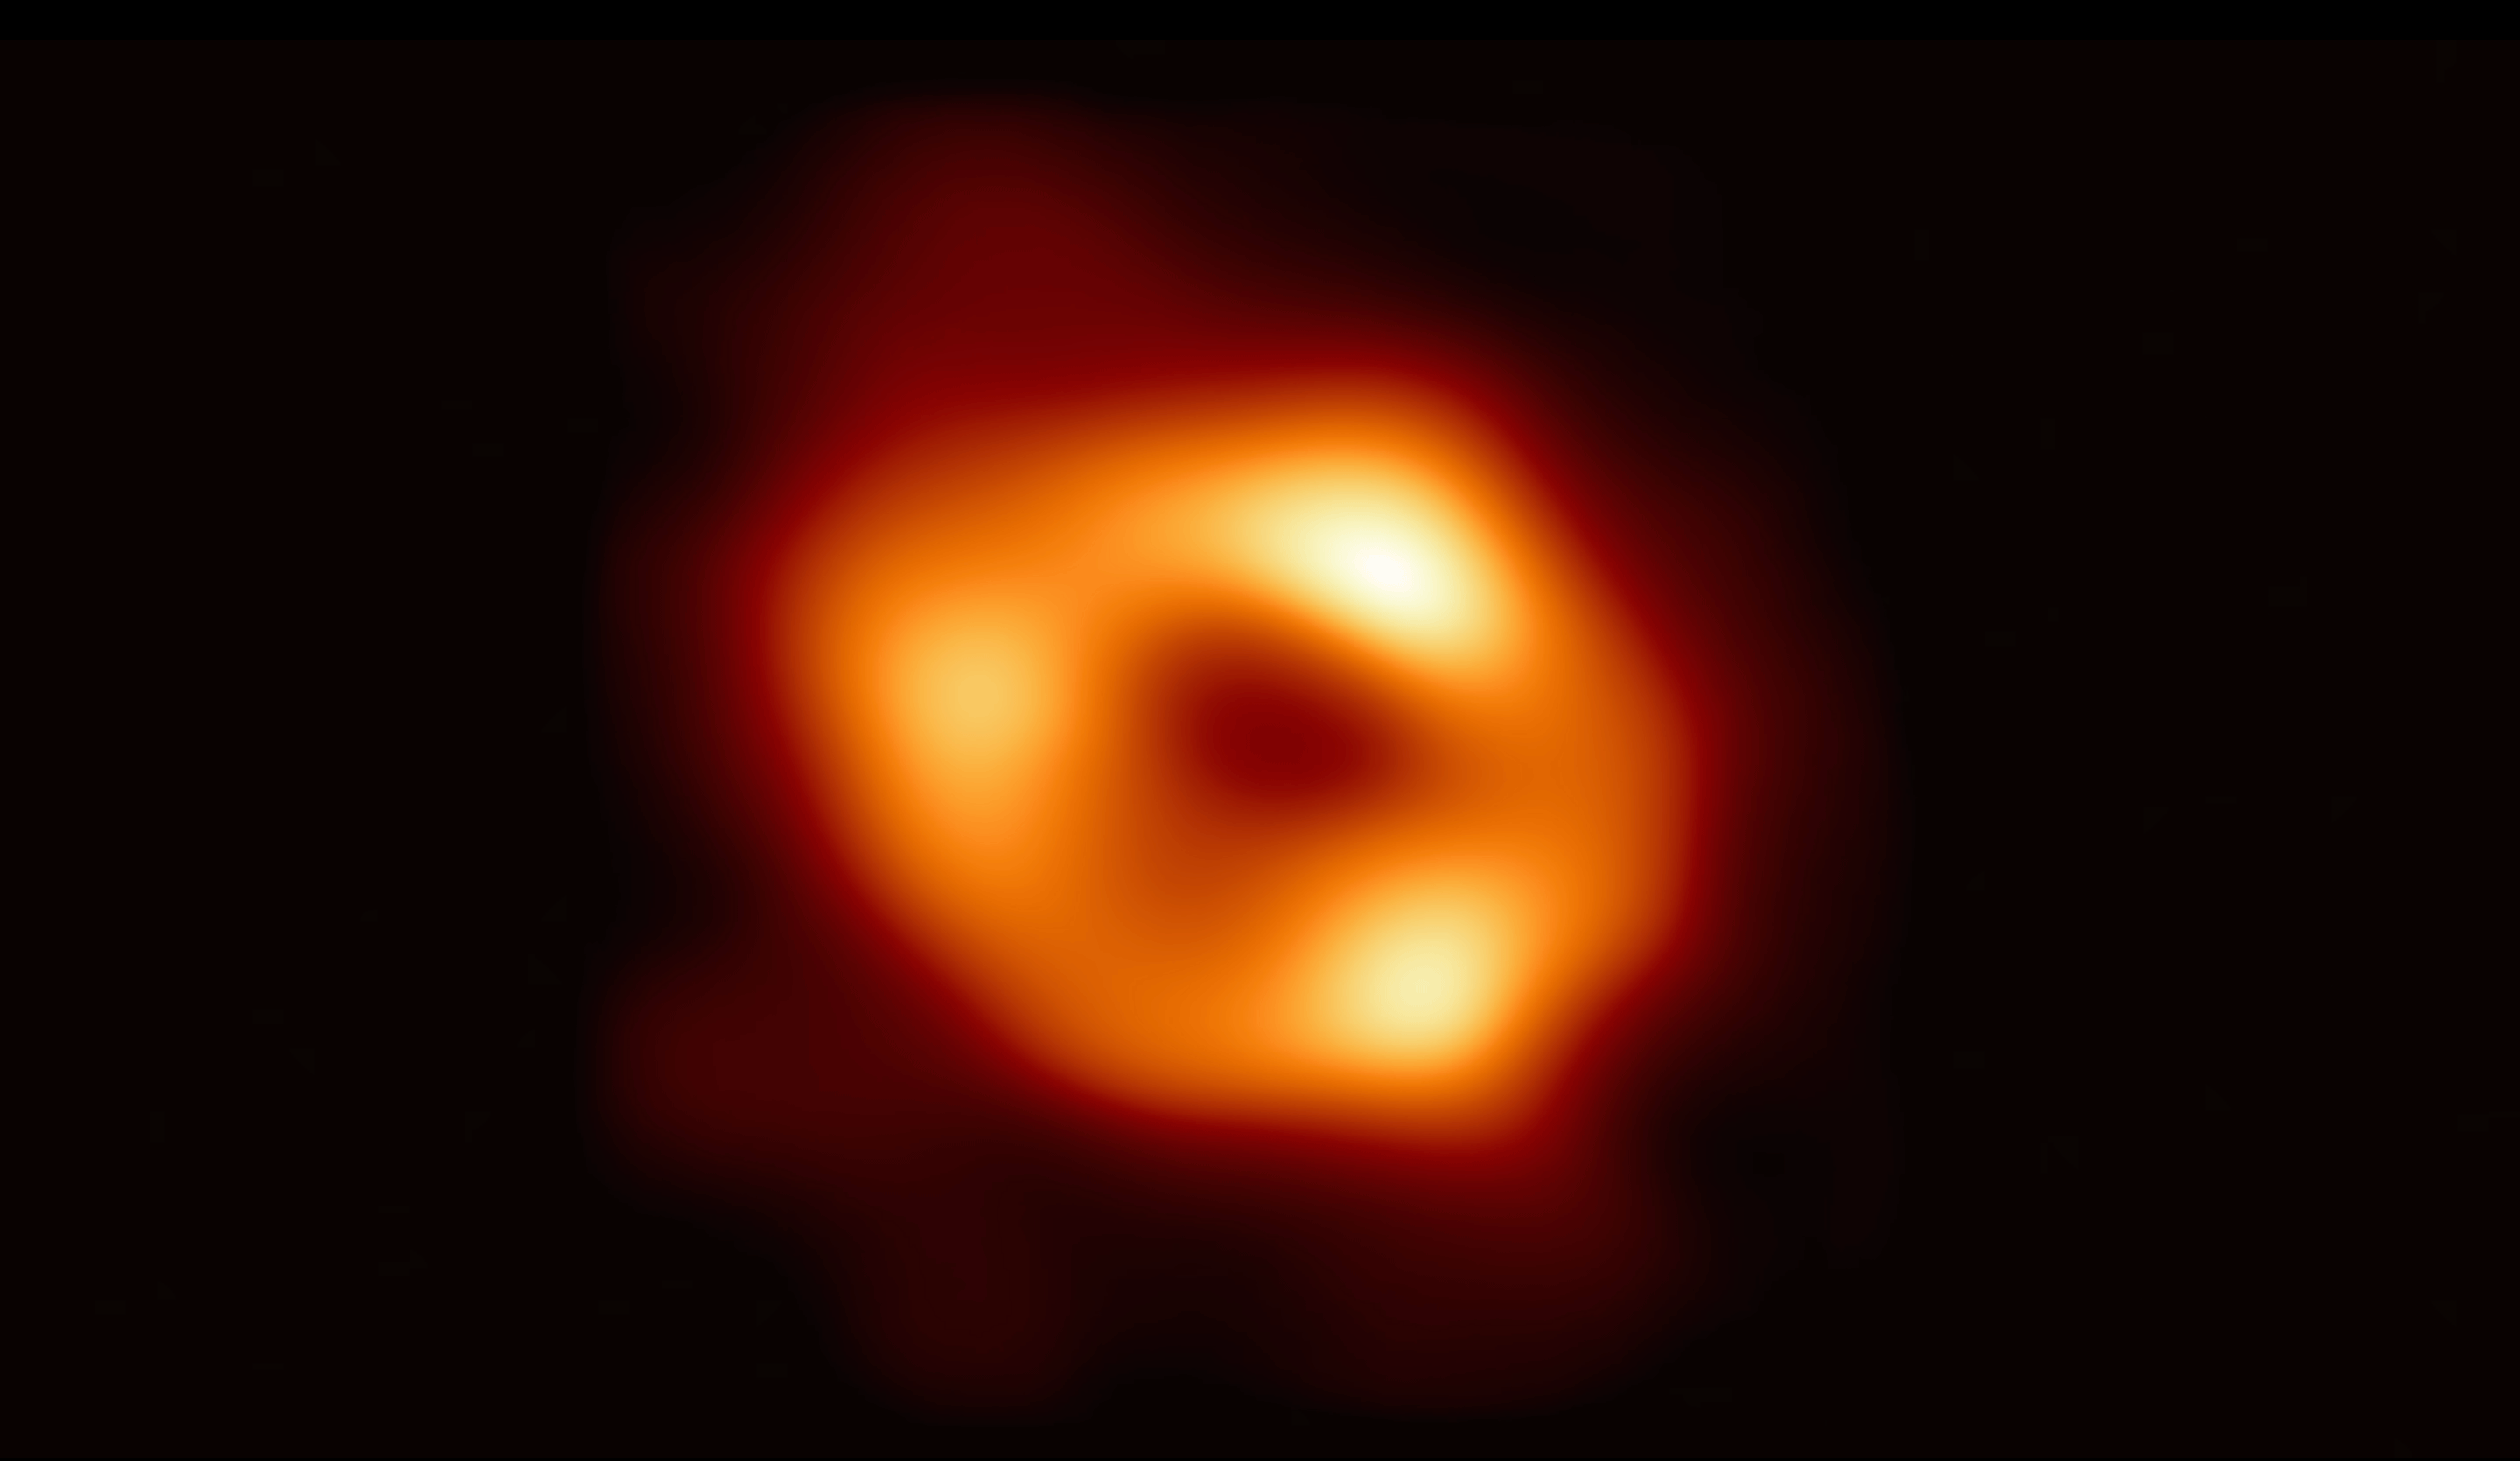 Conoce a Sgr A*: Acercándonos al agujero negro del centro de nuestra galaxia